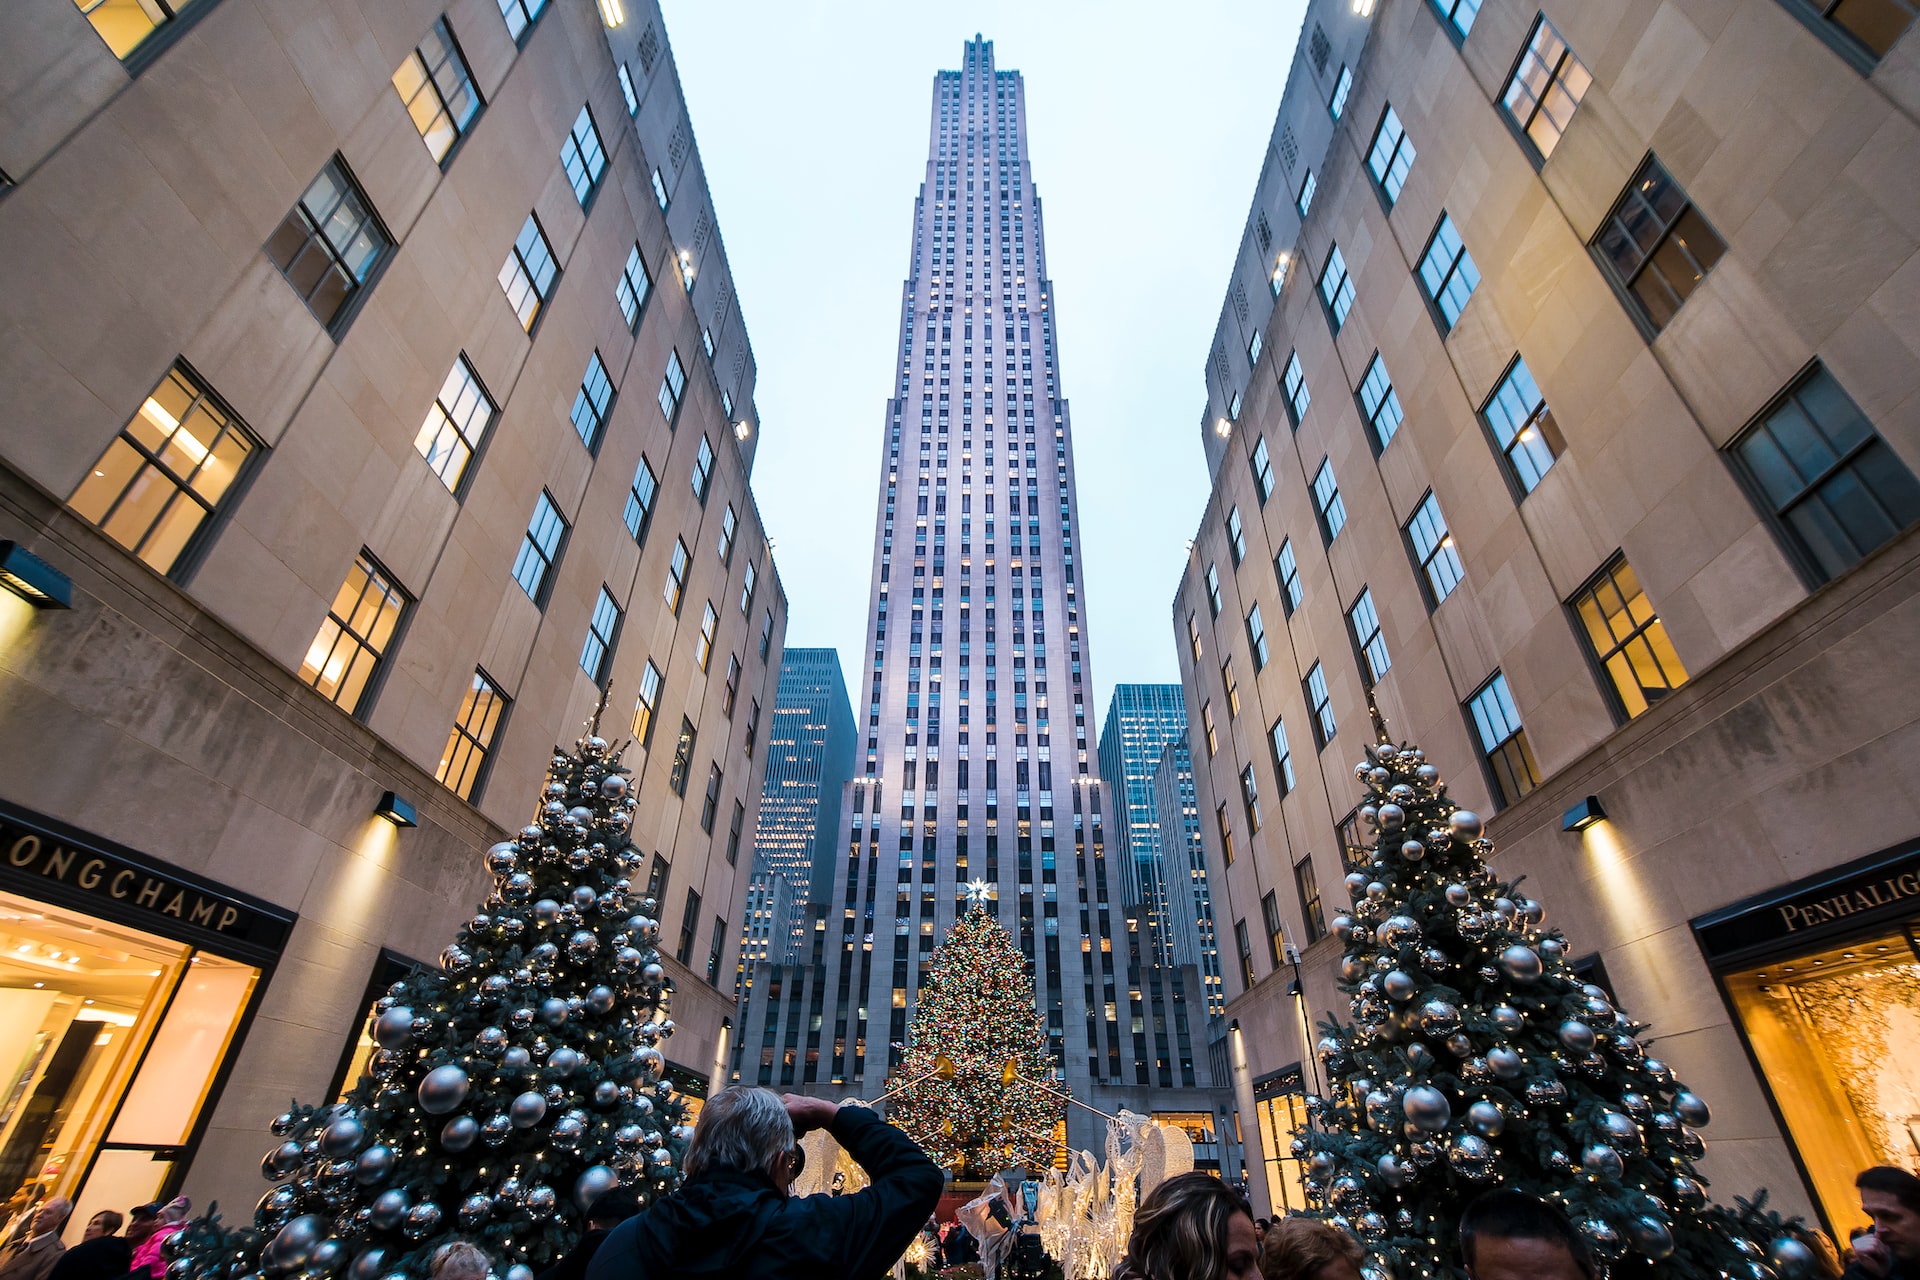 The Rockefeller Christmas Tree in New York.